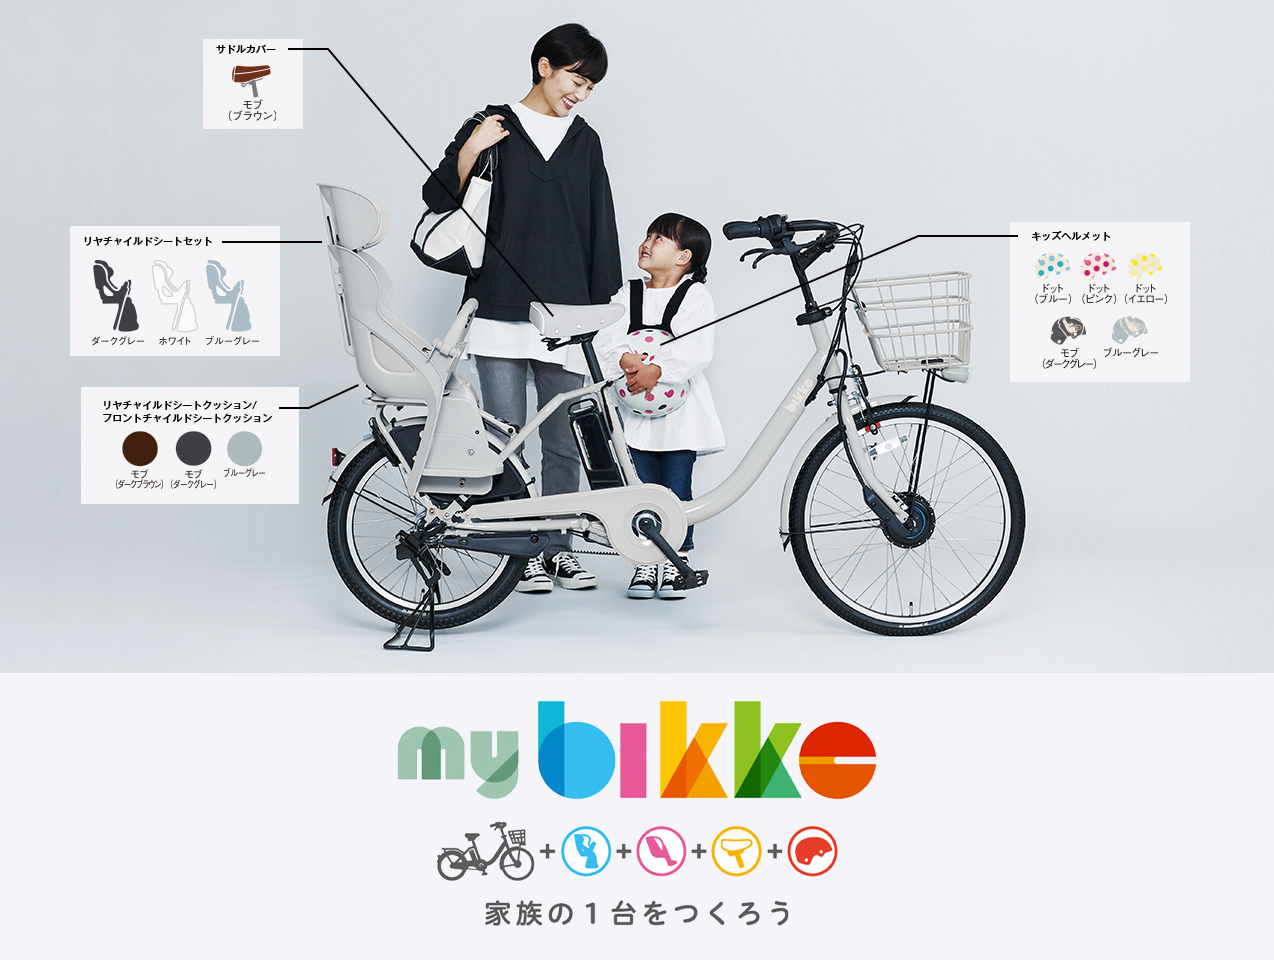 bikke2e 電動自転車 3人乗り対応 ダークグレー ビッケ - 自転車本体